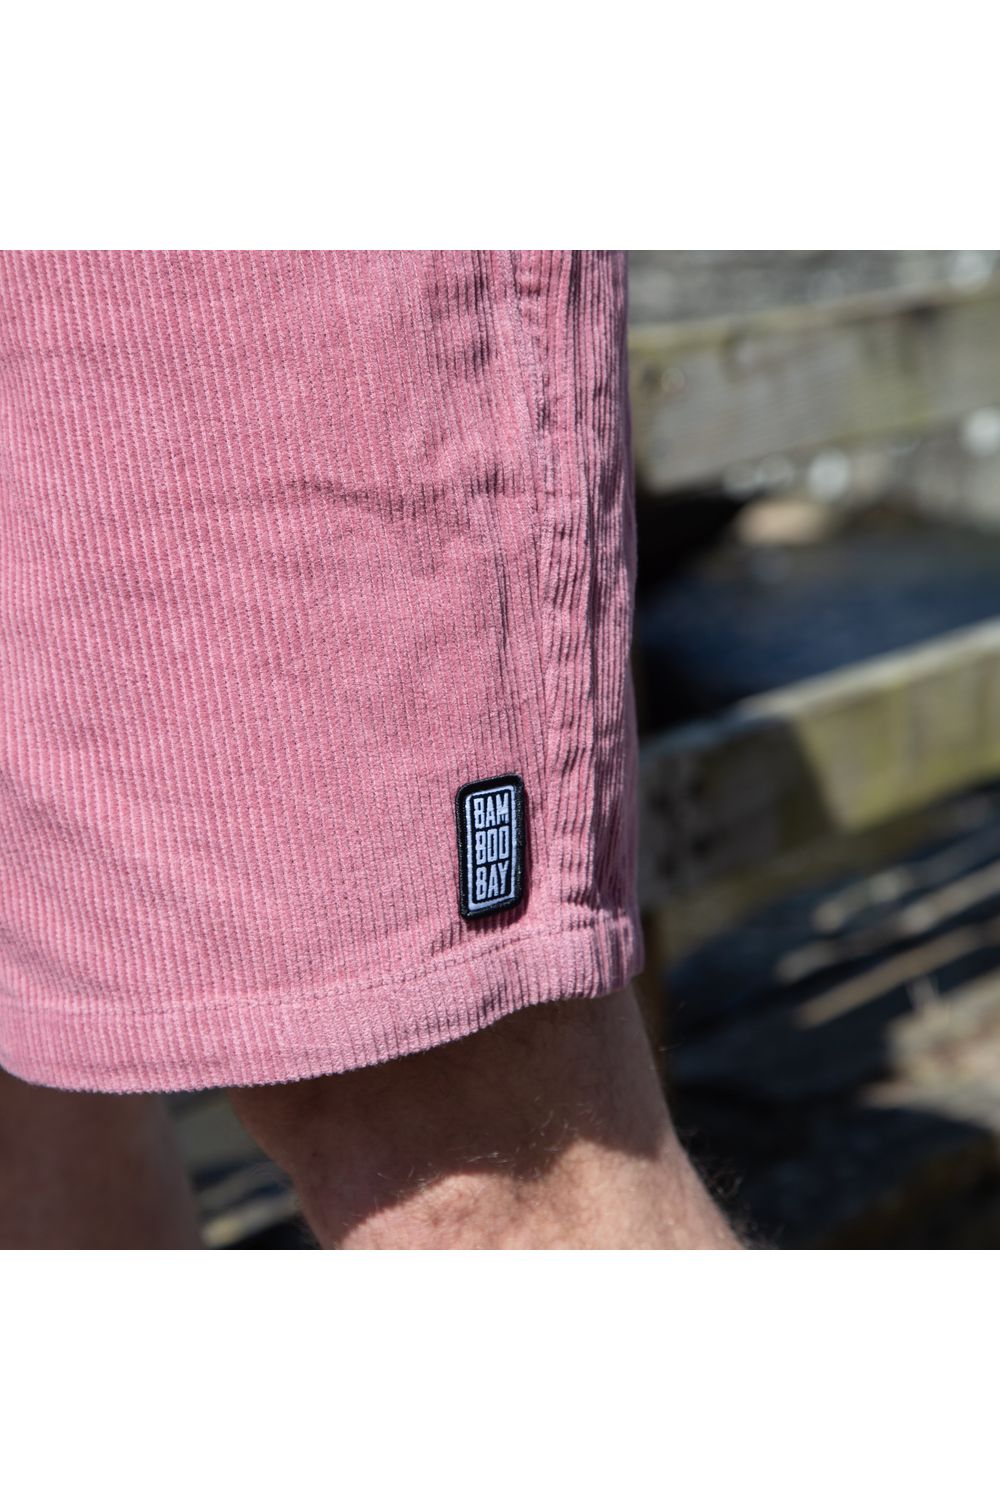 Bamboobay cord shorts in lilac front logo